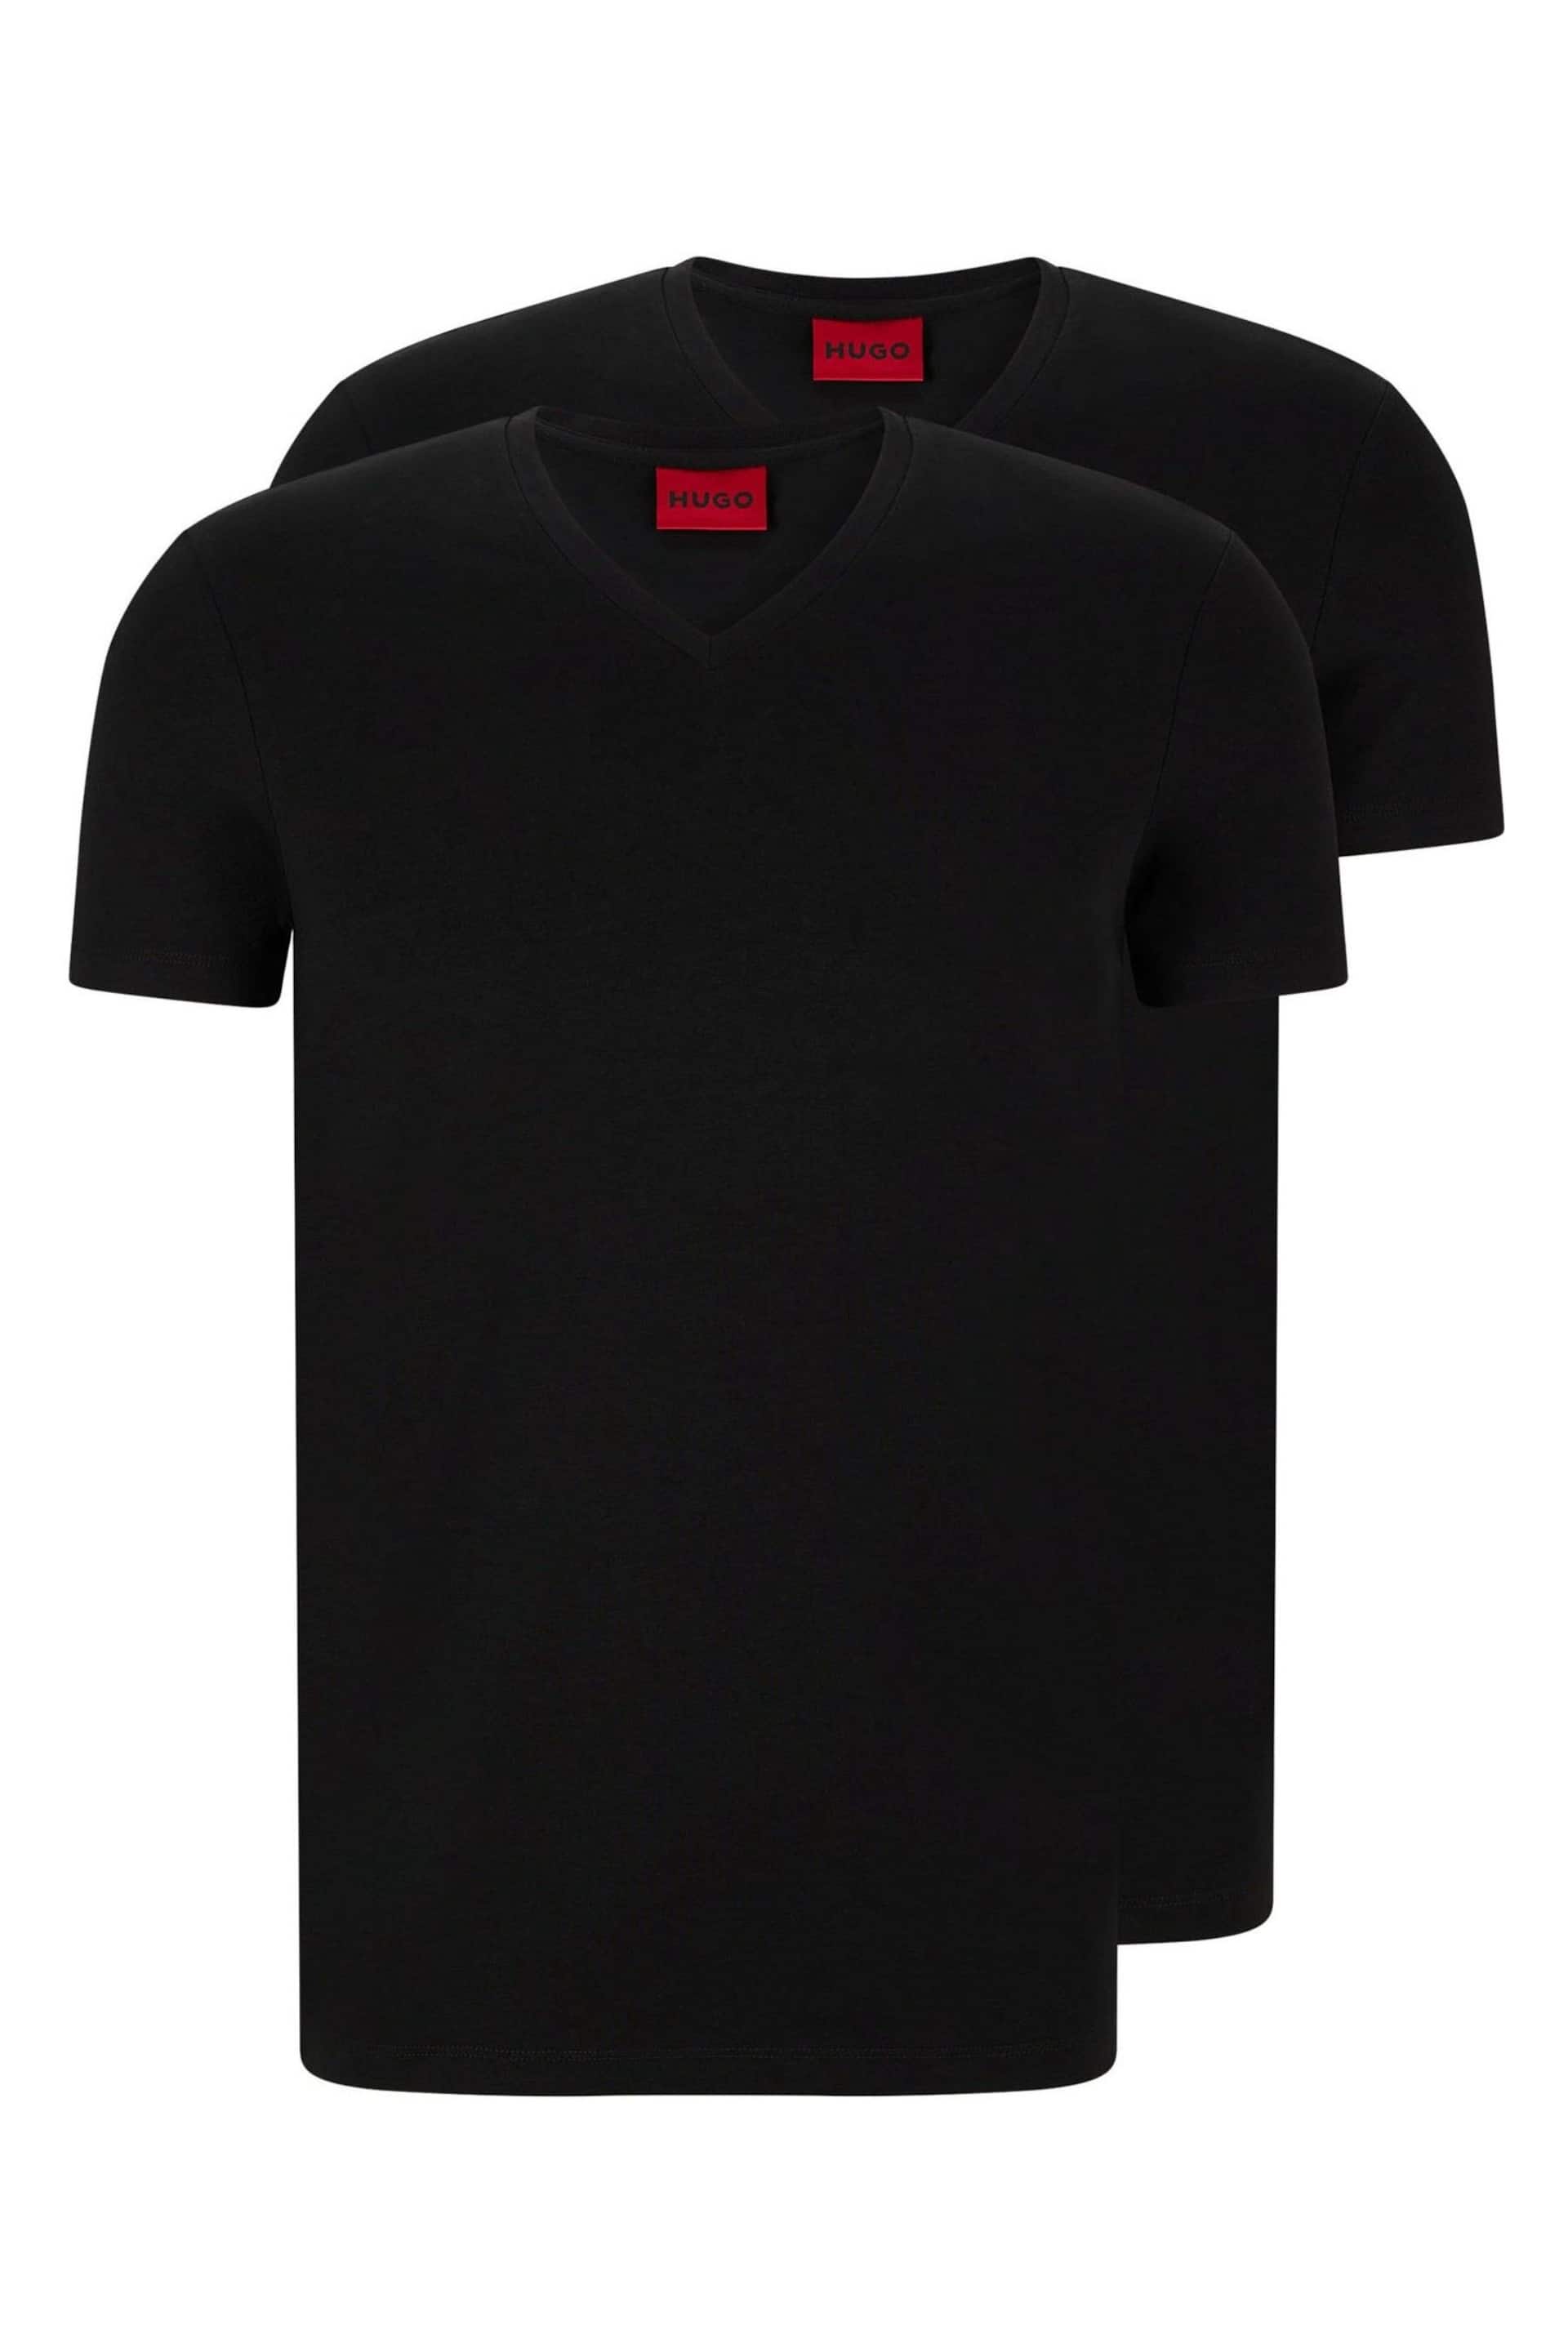 HUGO V-Neck T-Shirt 2 Pack - Image 5 of 5